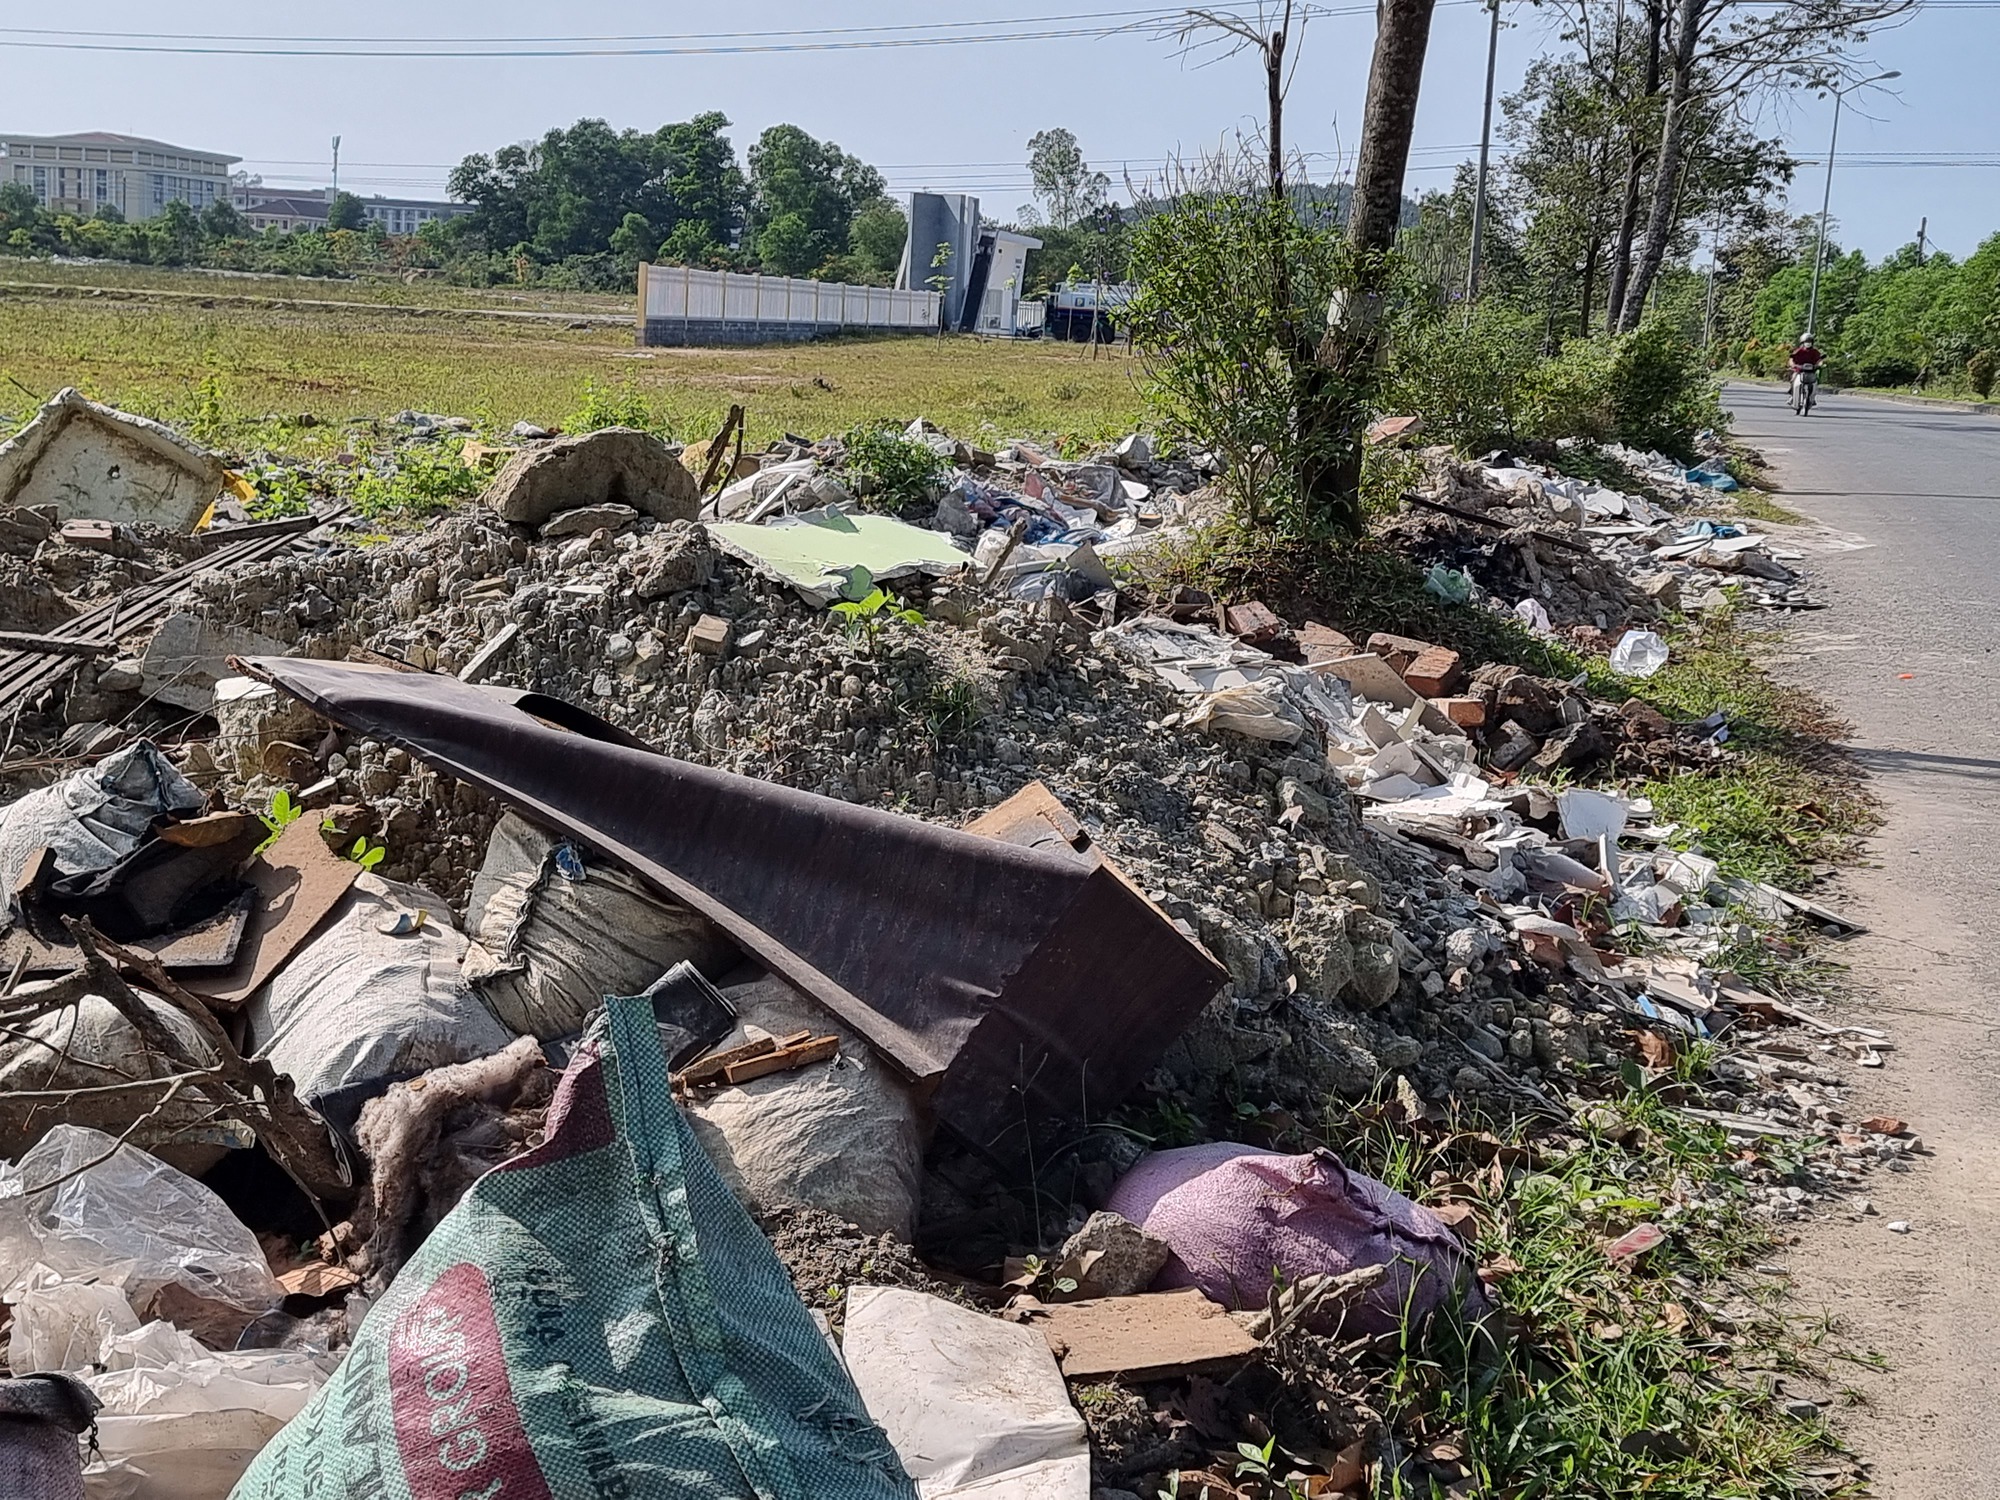 Khu vực đường Hồ Đắc Di, trước khu quy hoạch Đại học Huế, xuất hiện nhiều loại rác thải sinh hoạt, rác thải rắn,... chất thành từng đống nằm ngổn ngang.